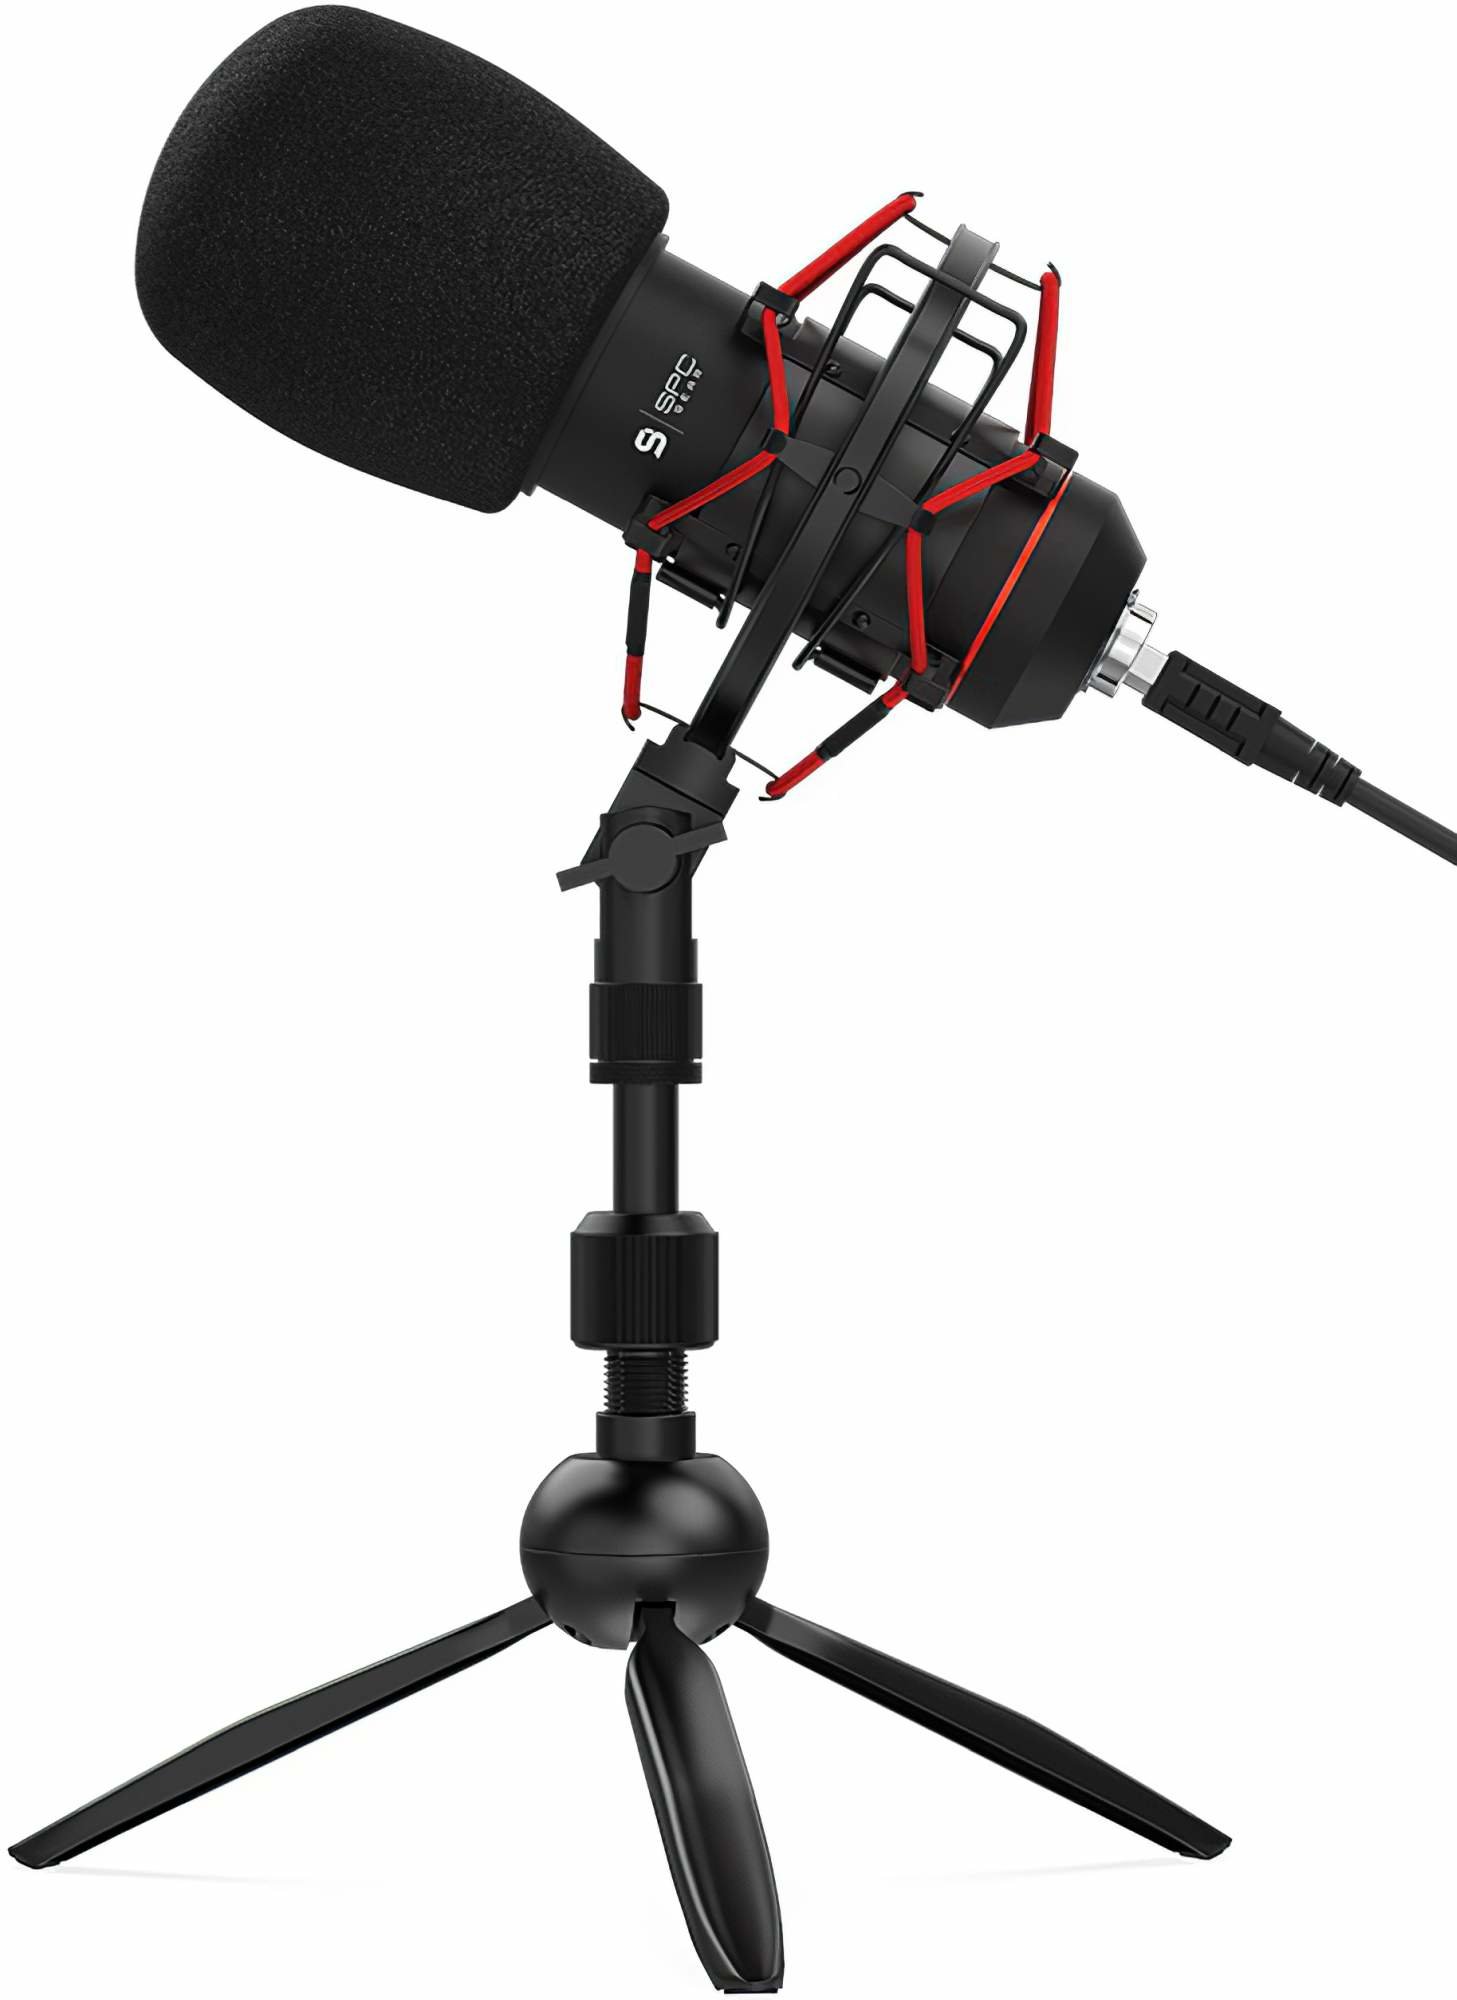 SPC GEAR SM900T Mikrofon - niskie ceny i opinie w Media Expert